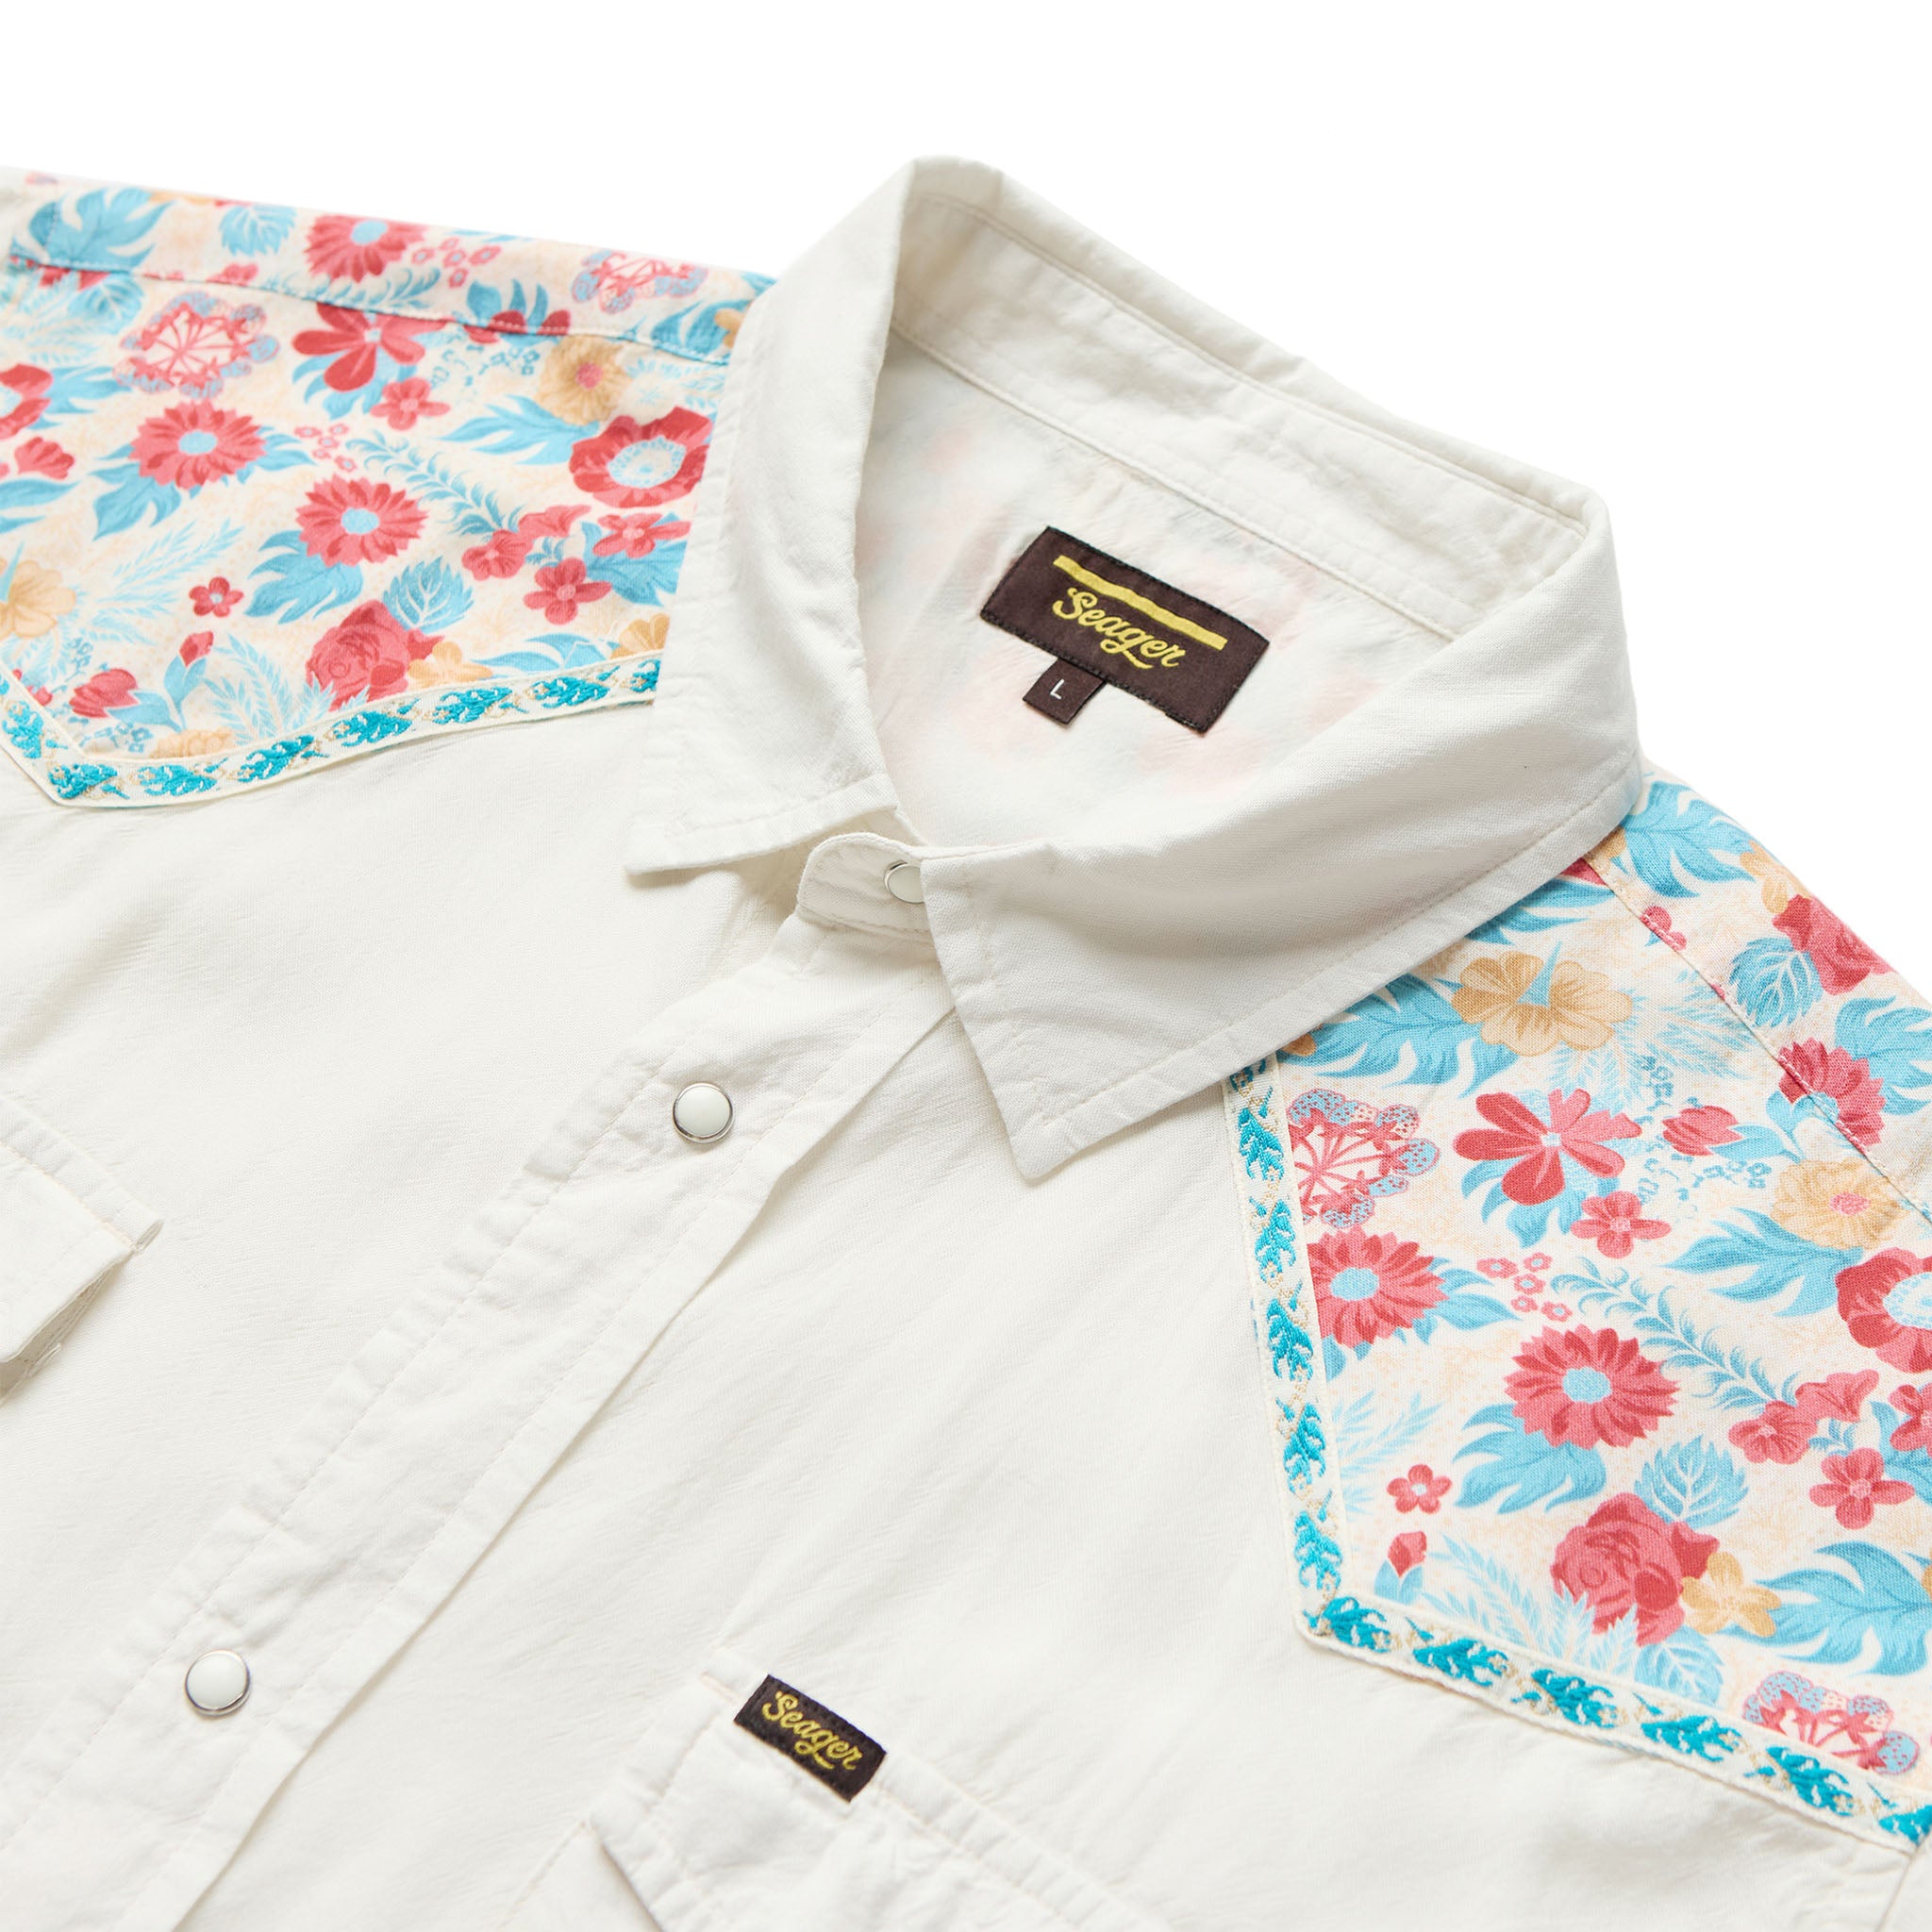 Amarillo S/S Flora Snap Shirt Vintage White